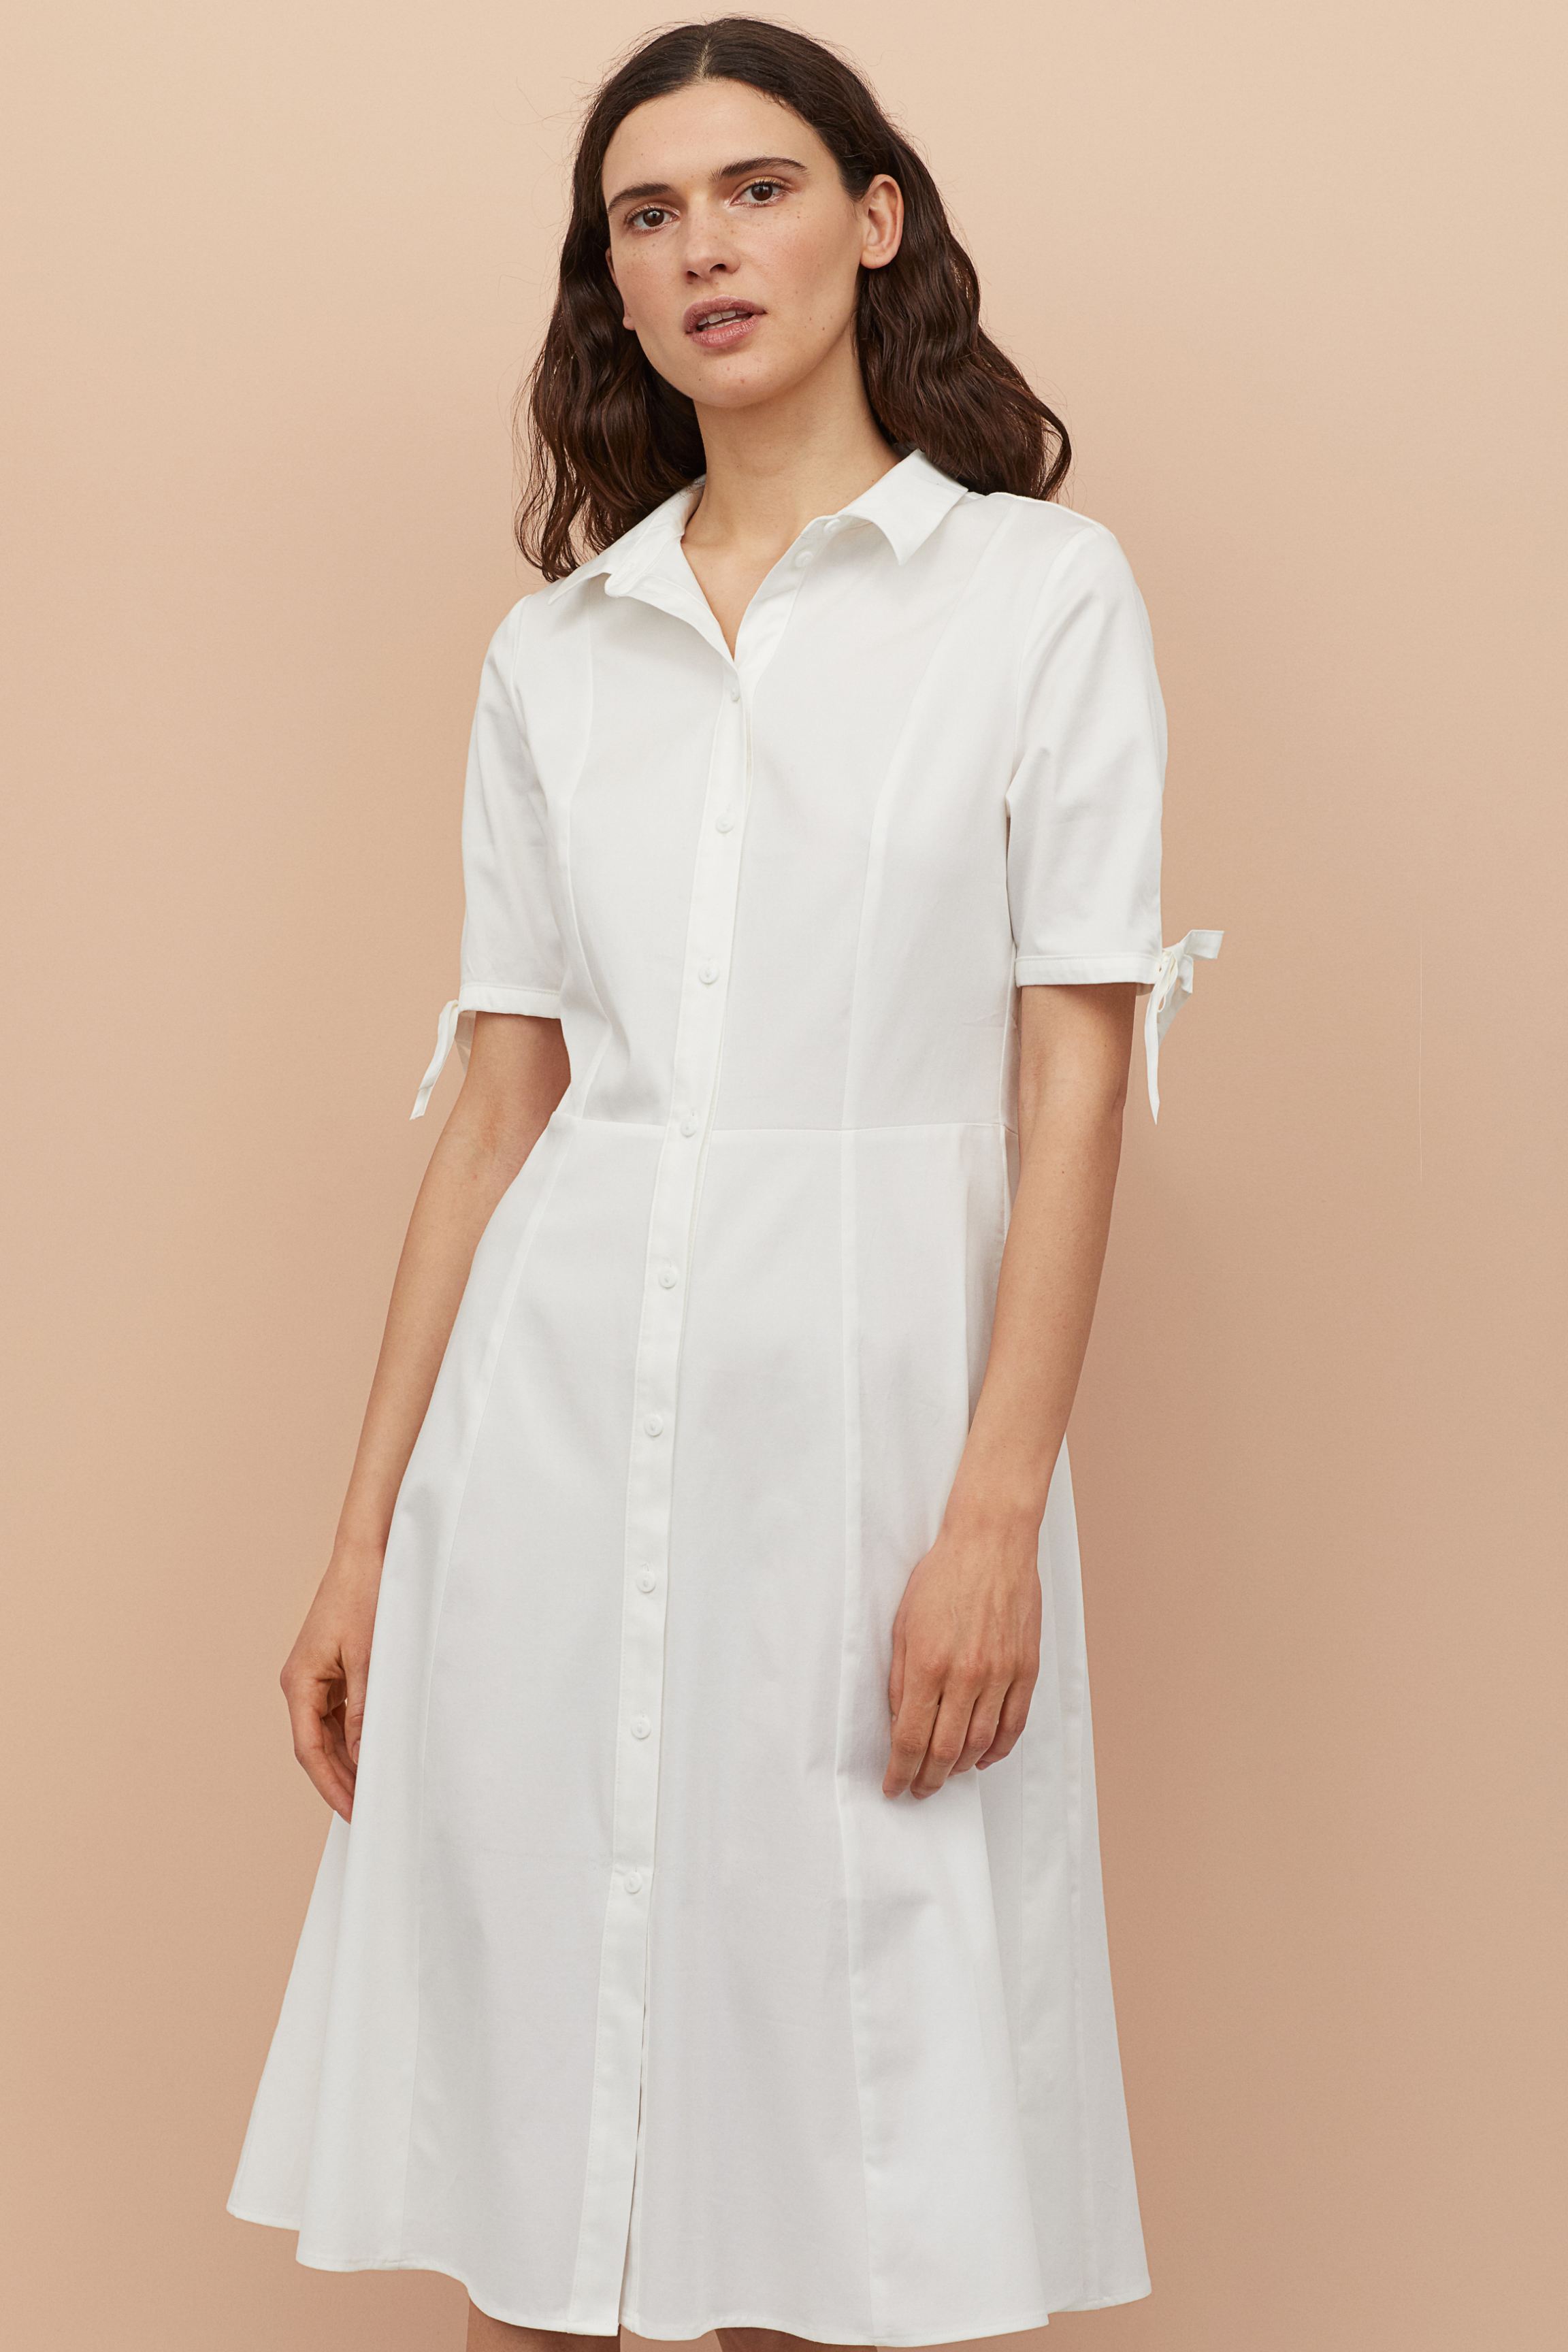 White Shirt Dresses For Women: Collared ...